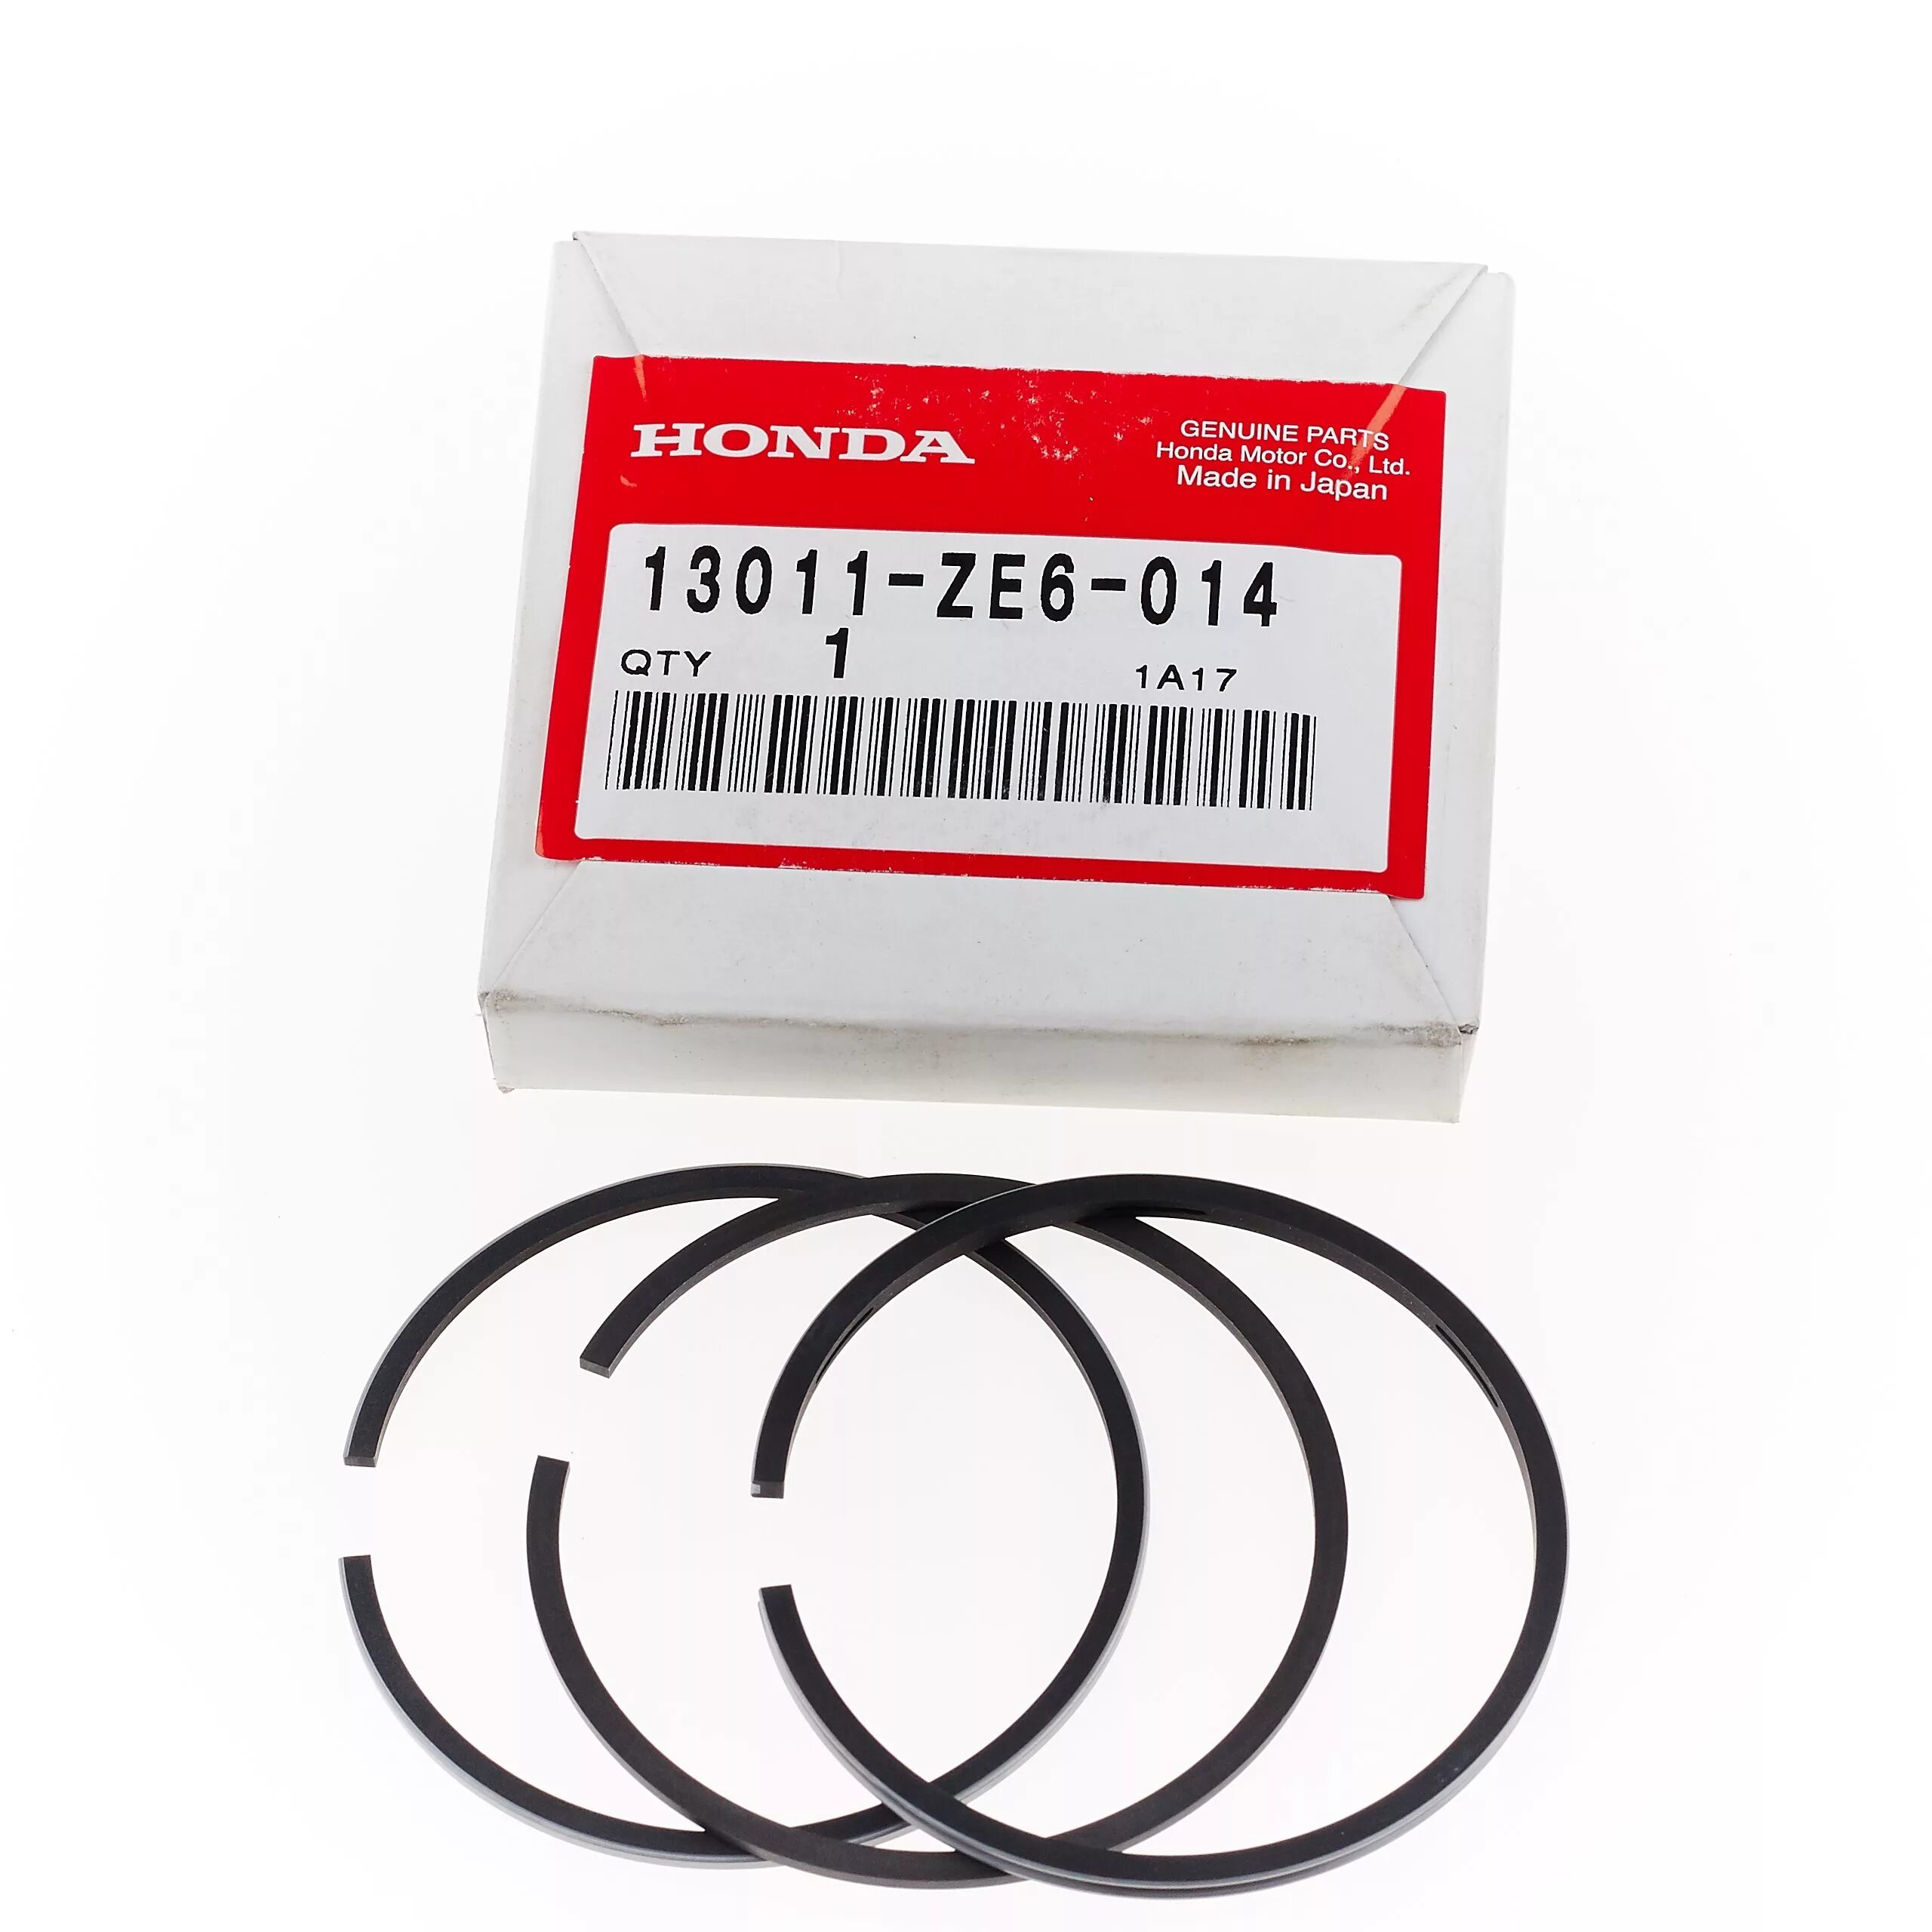 Кольца поршневые Honda gx120. Кольца поршневые для Honda GX 120 (60mm). Honda 13011-r40-a12 комплект поршневых колец. Кольца поршневые для Honda GX 120 (60mm) 109022 Размеры.